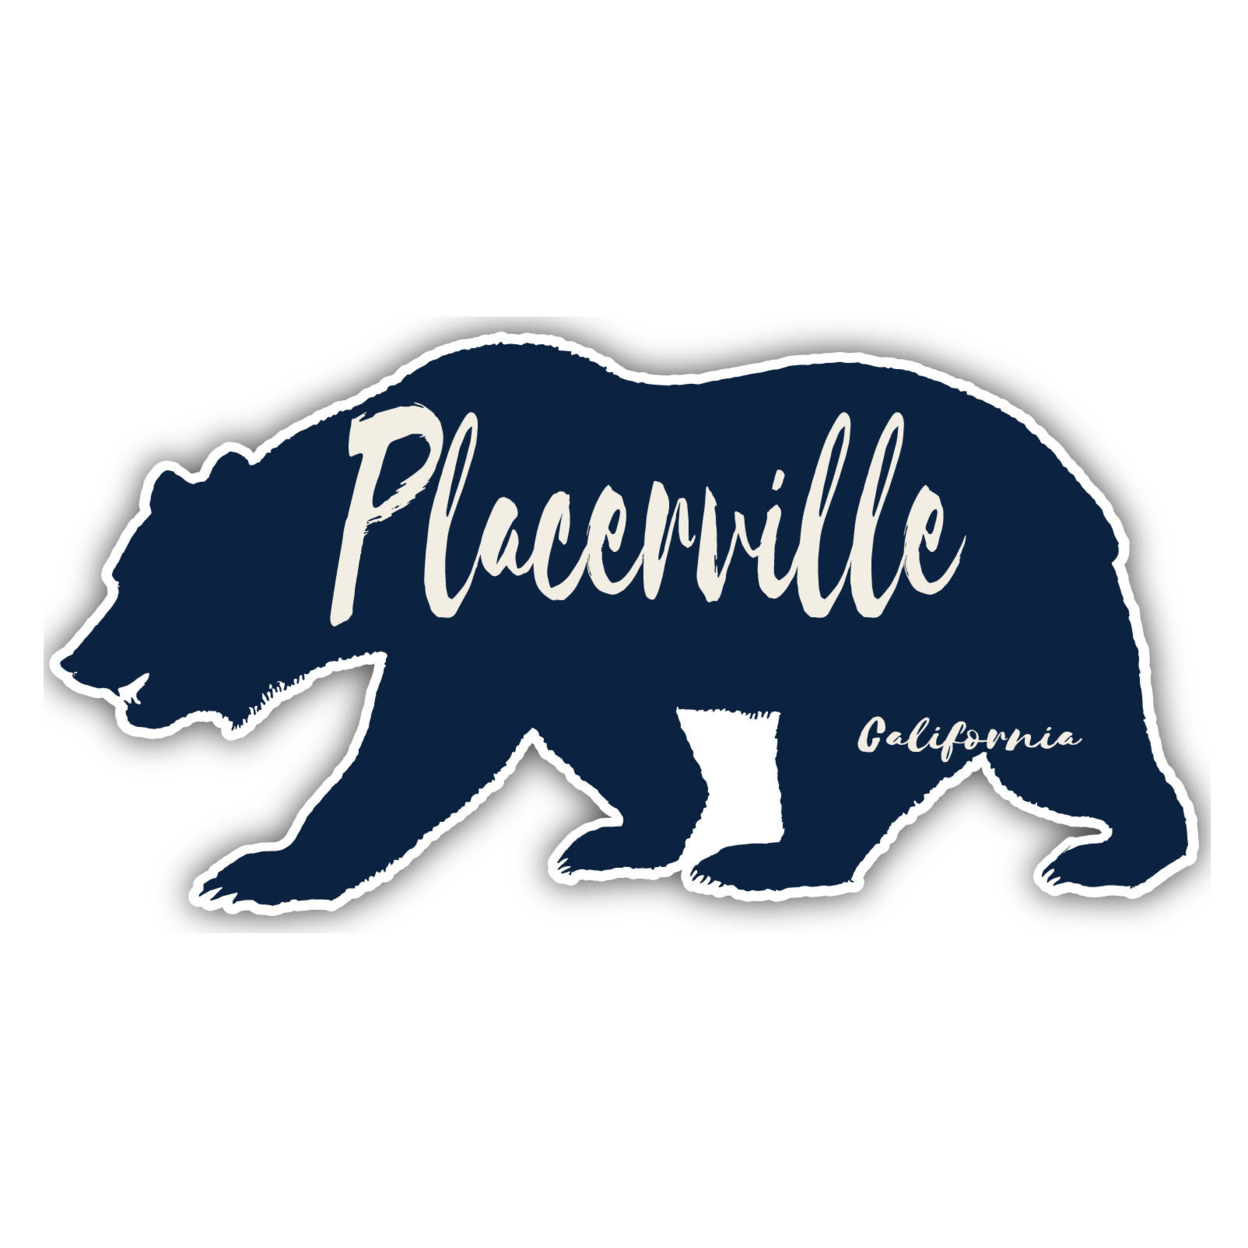 Placerville California Souvenir Decorative Stickers (Choose Theme And Size) - Single Unit, 2-Inch, Tent